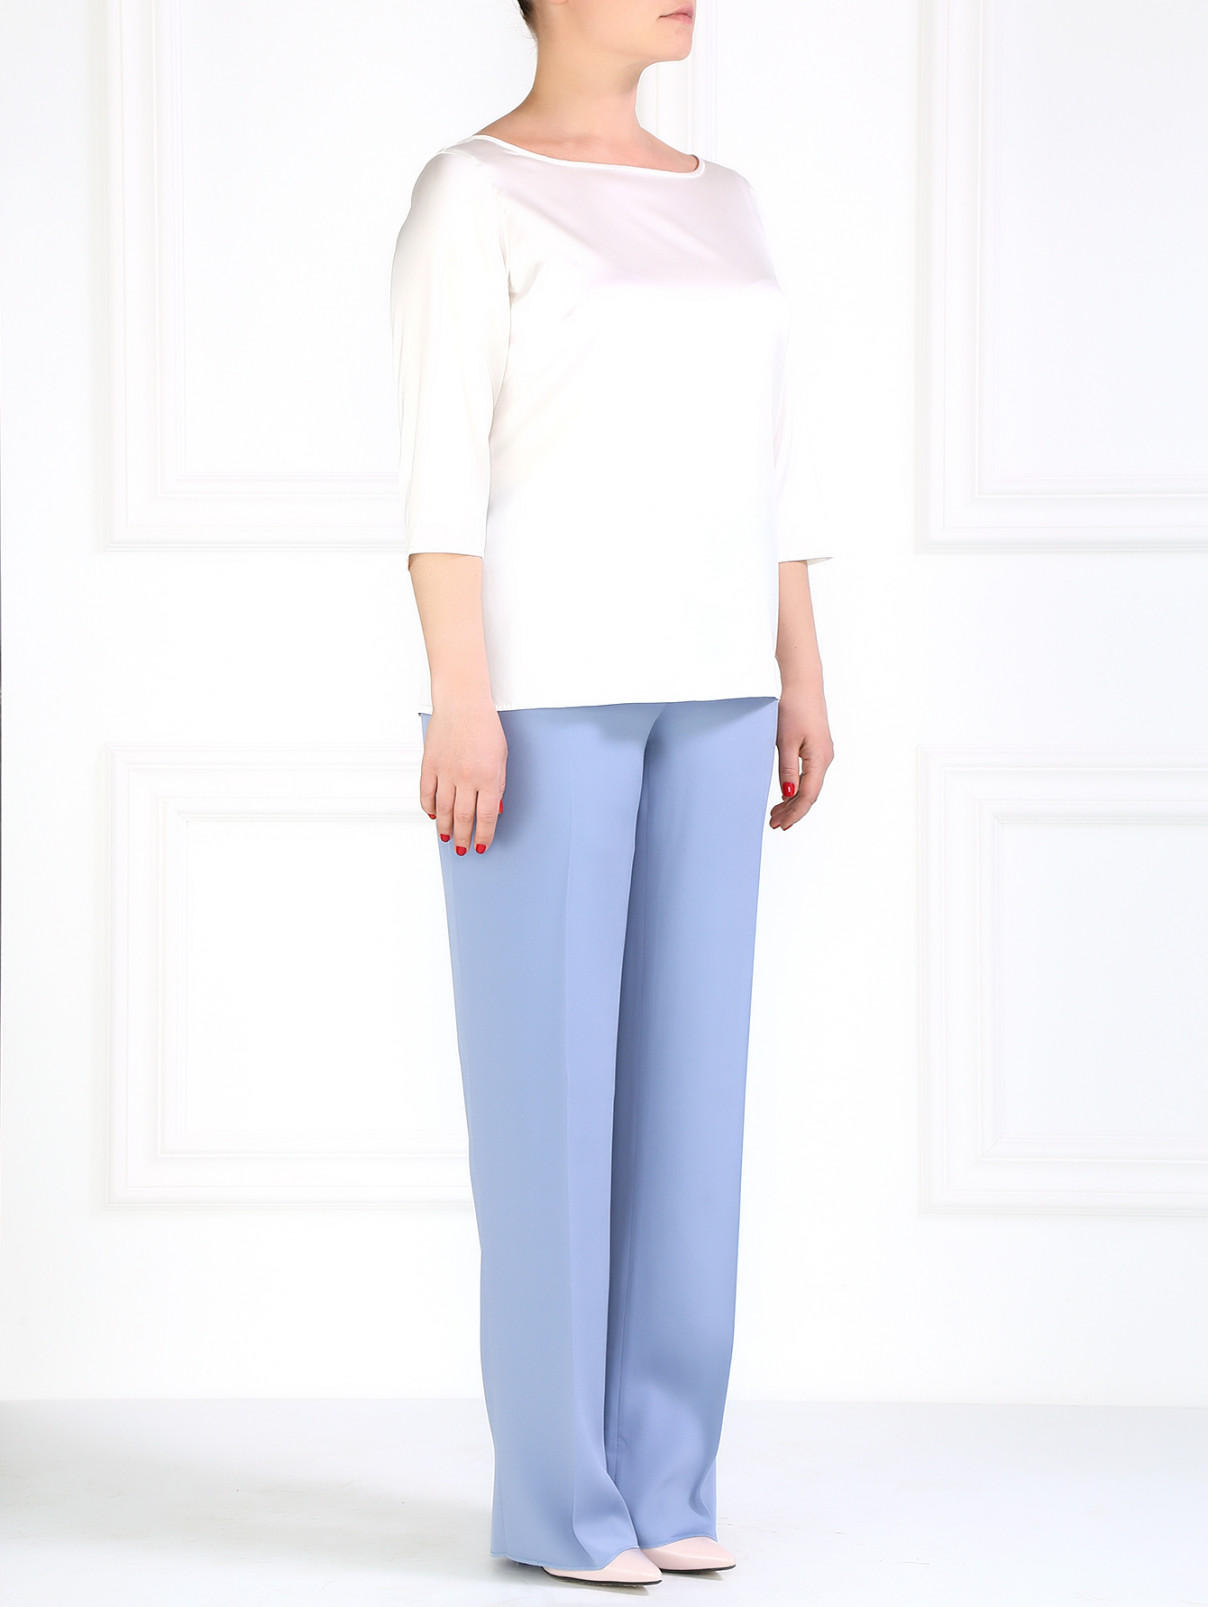 Шелковая блуза с рукавом 3/4 Marina Rinaldi  –  Модель Общий вид  – Цвет:  Белый